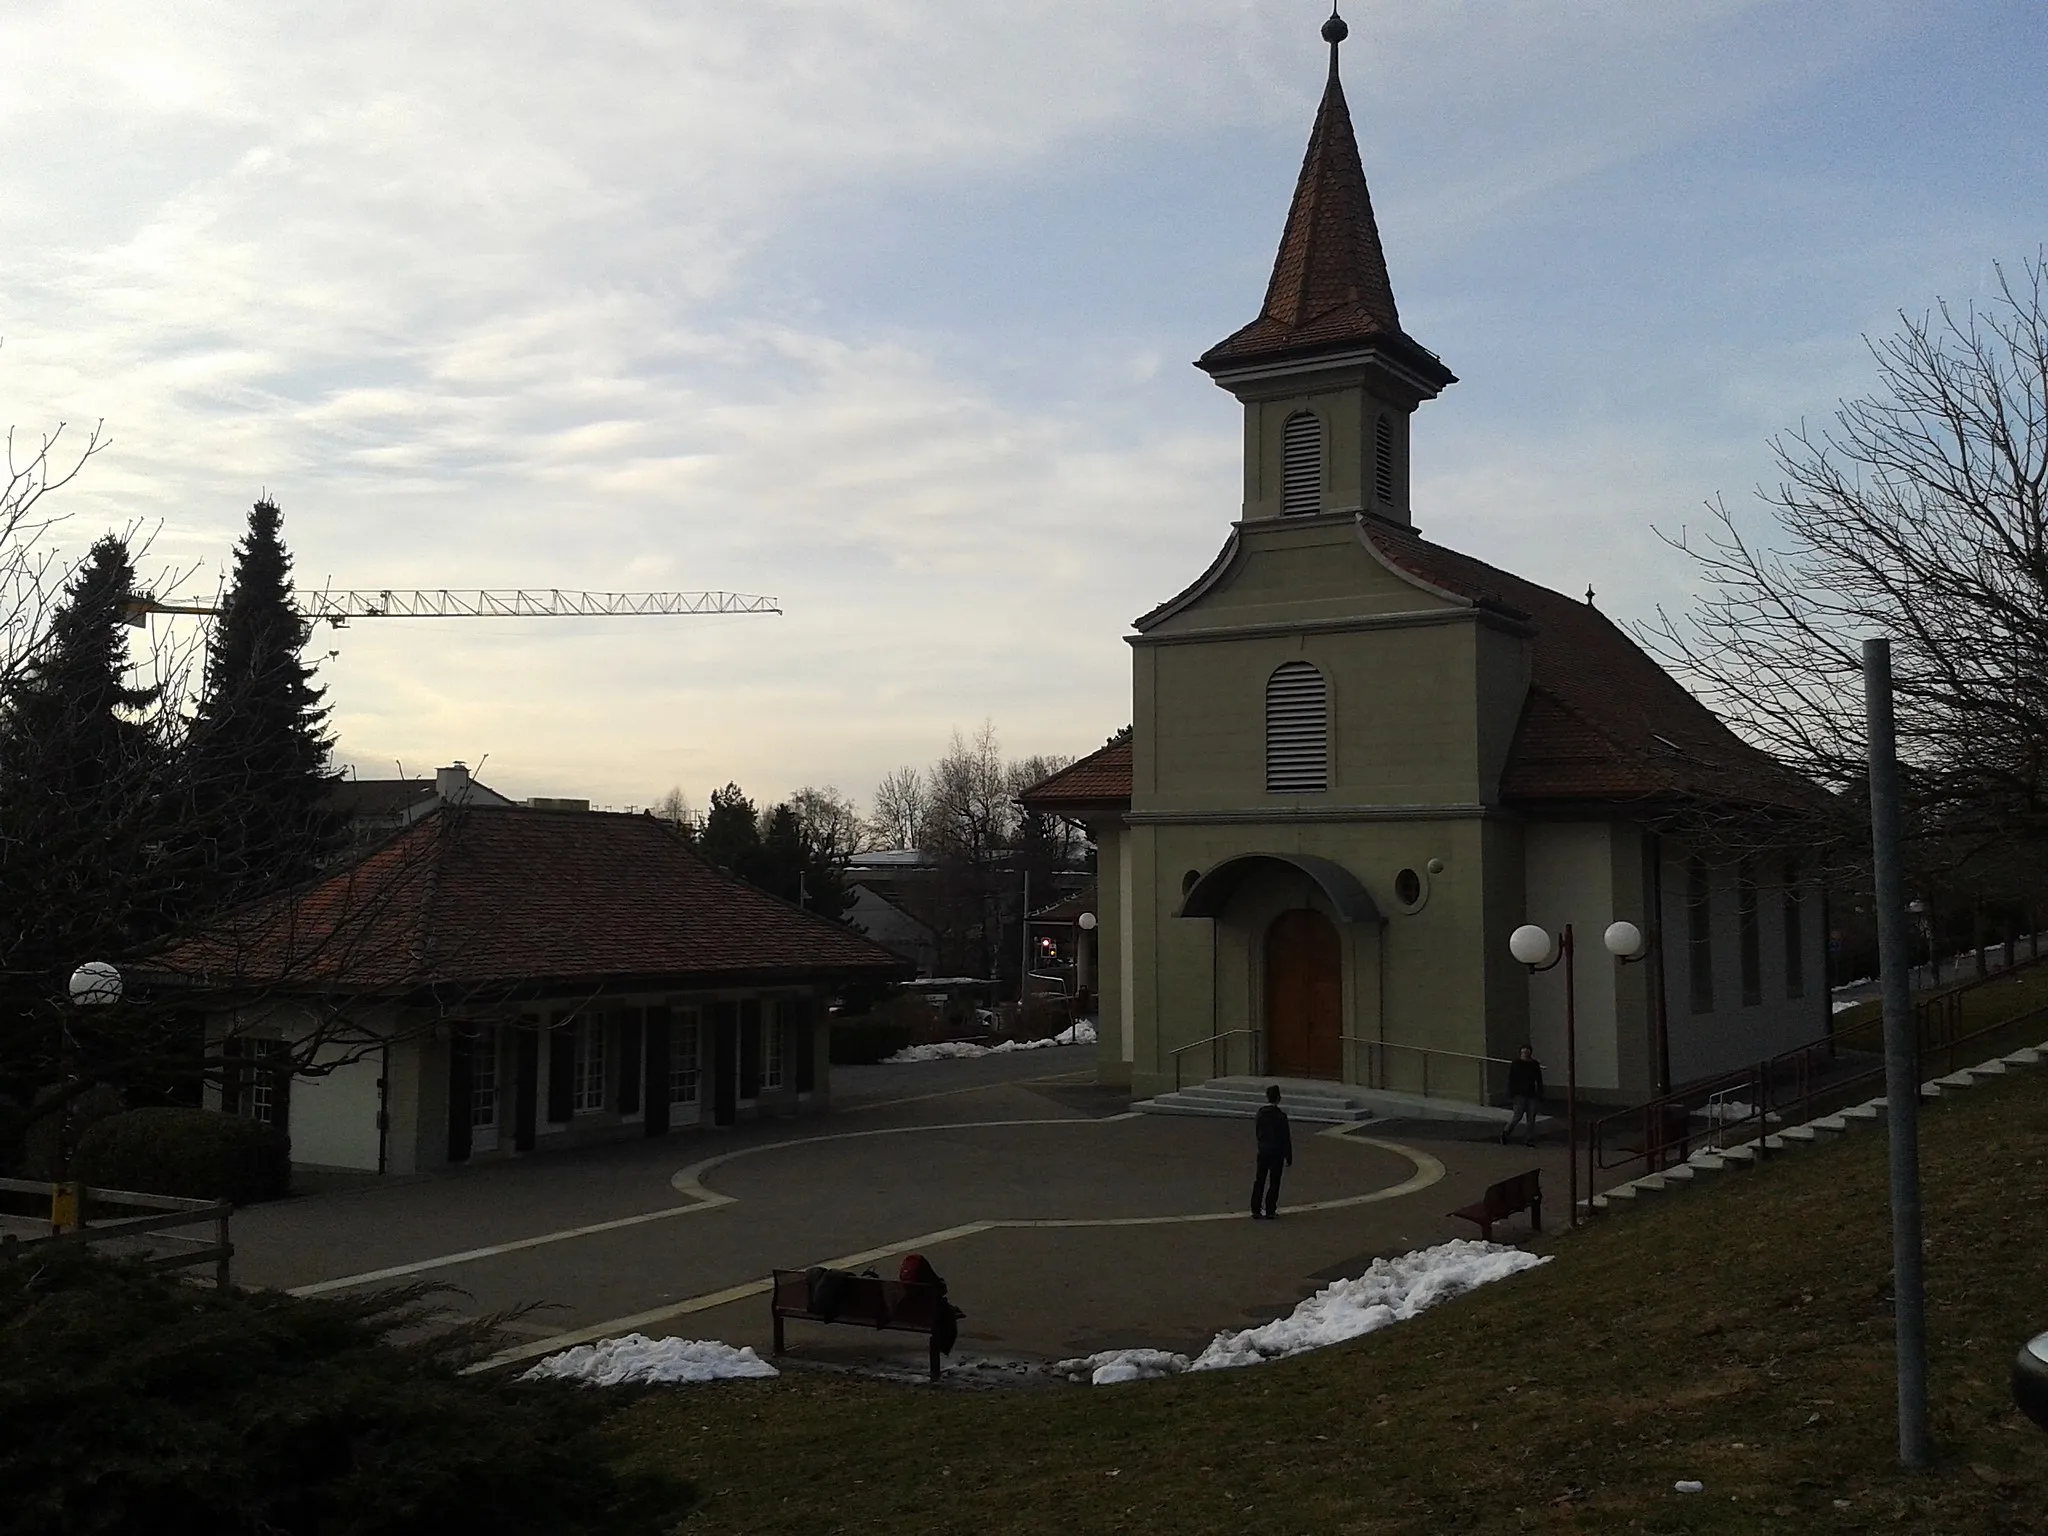 Image of Le Mont-sur-Lausanne